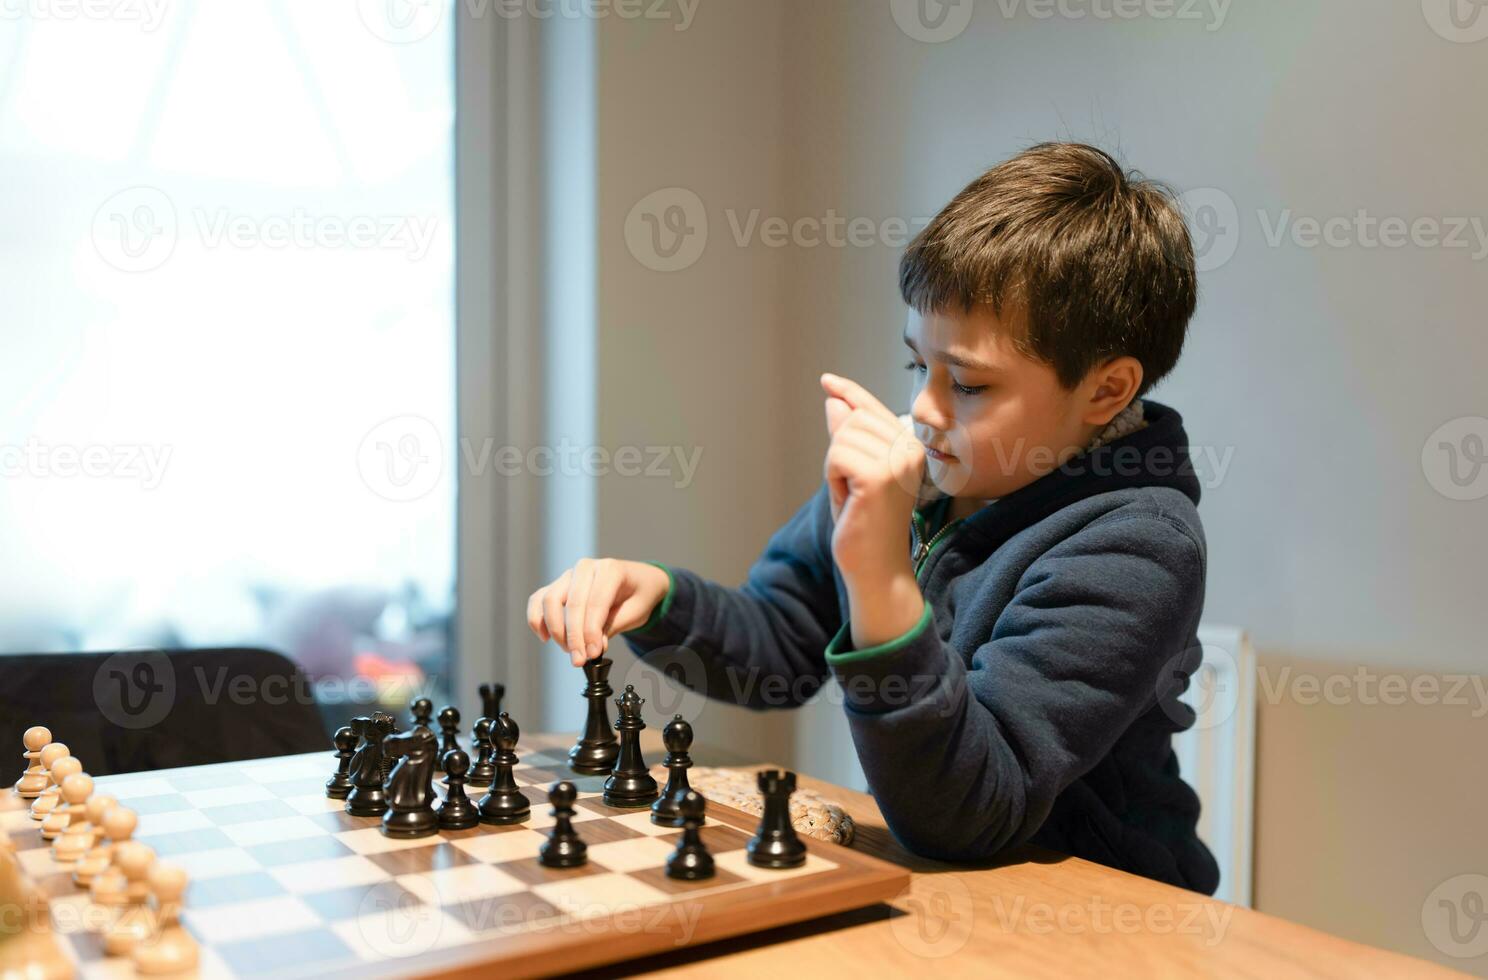 geconcentreerd jong jongen ontwikkelen schaak strategie, spelen schaakbord spel met vriend of familie Bij huis. werkzaamheid of hobby voor familie concept foto